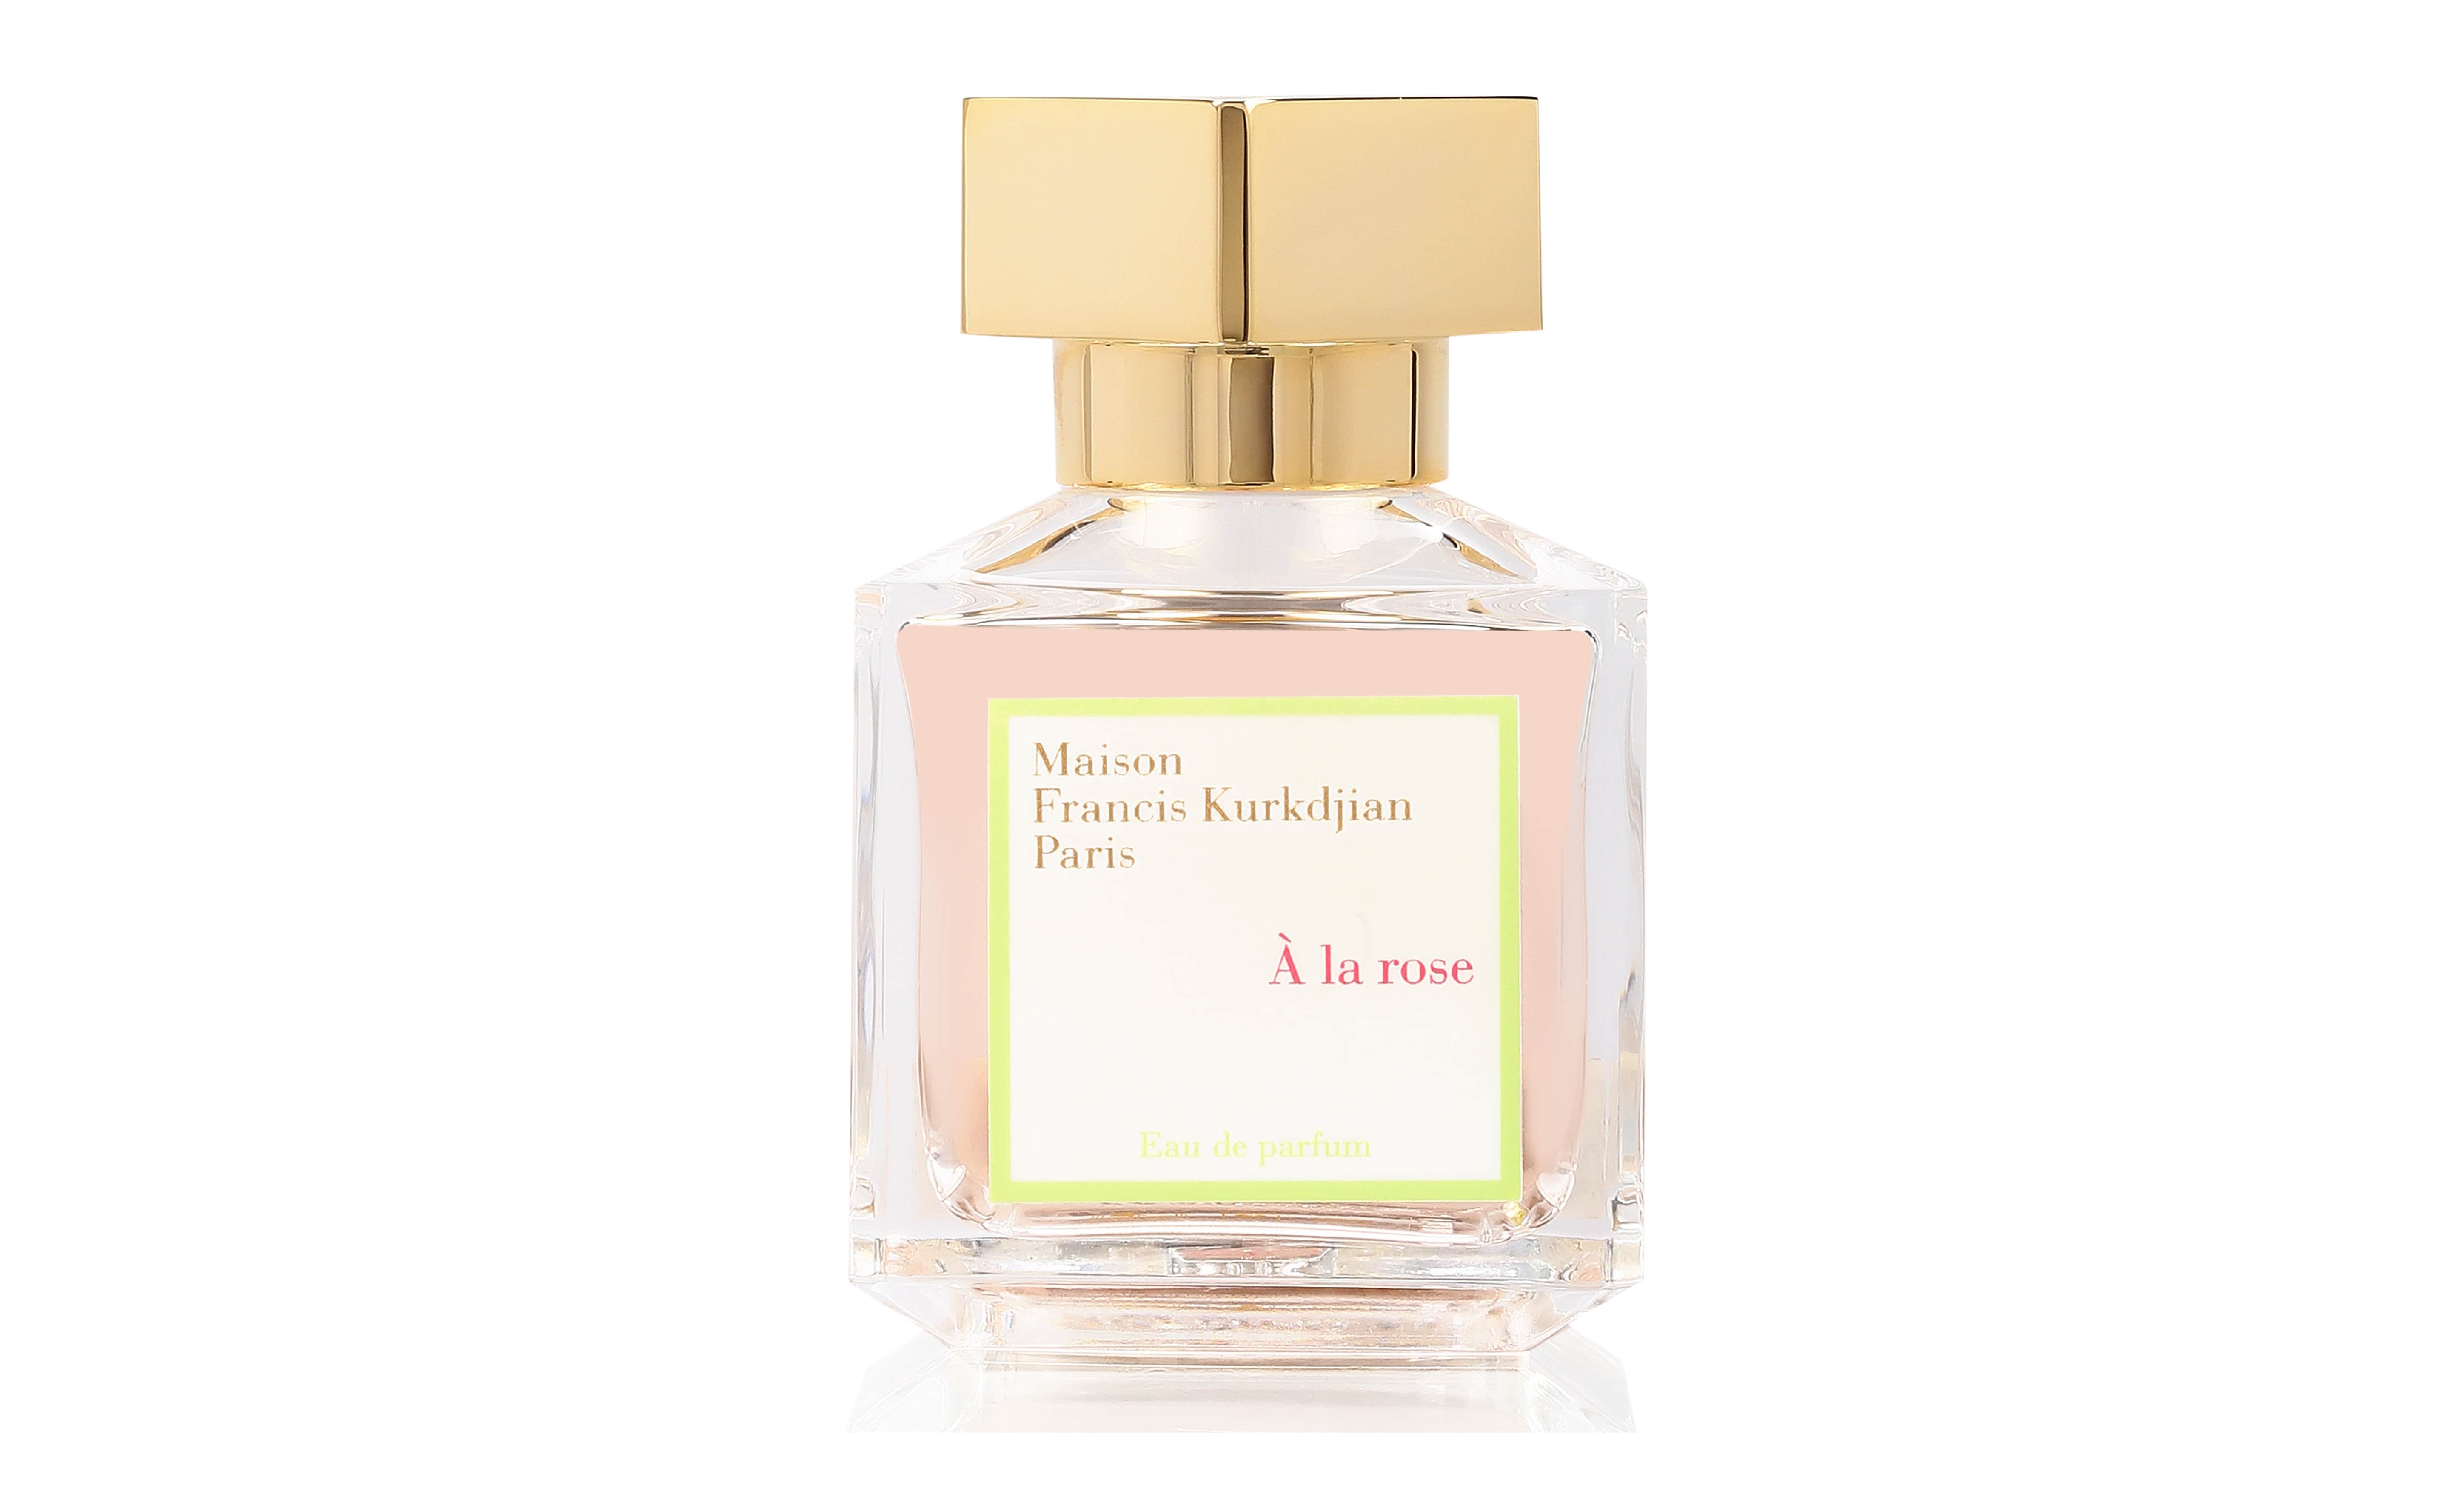 Maison Francis Kurkdjian − A la rose, (メゾン フランシス クルジャン - ア ラ ローズ)